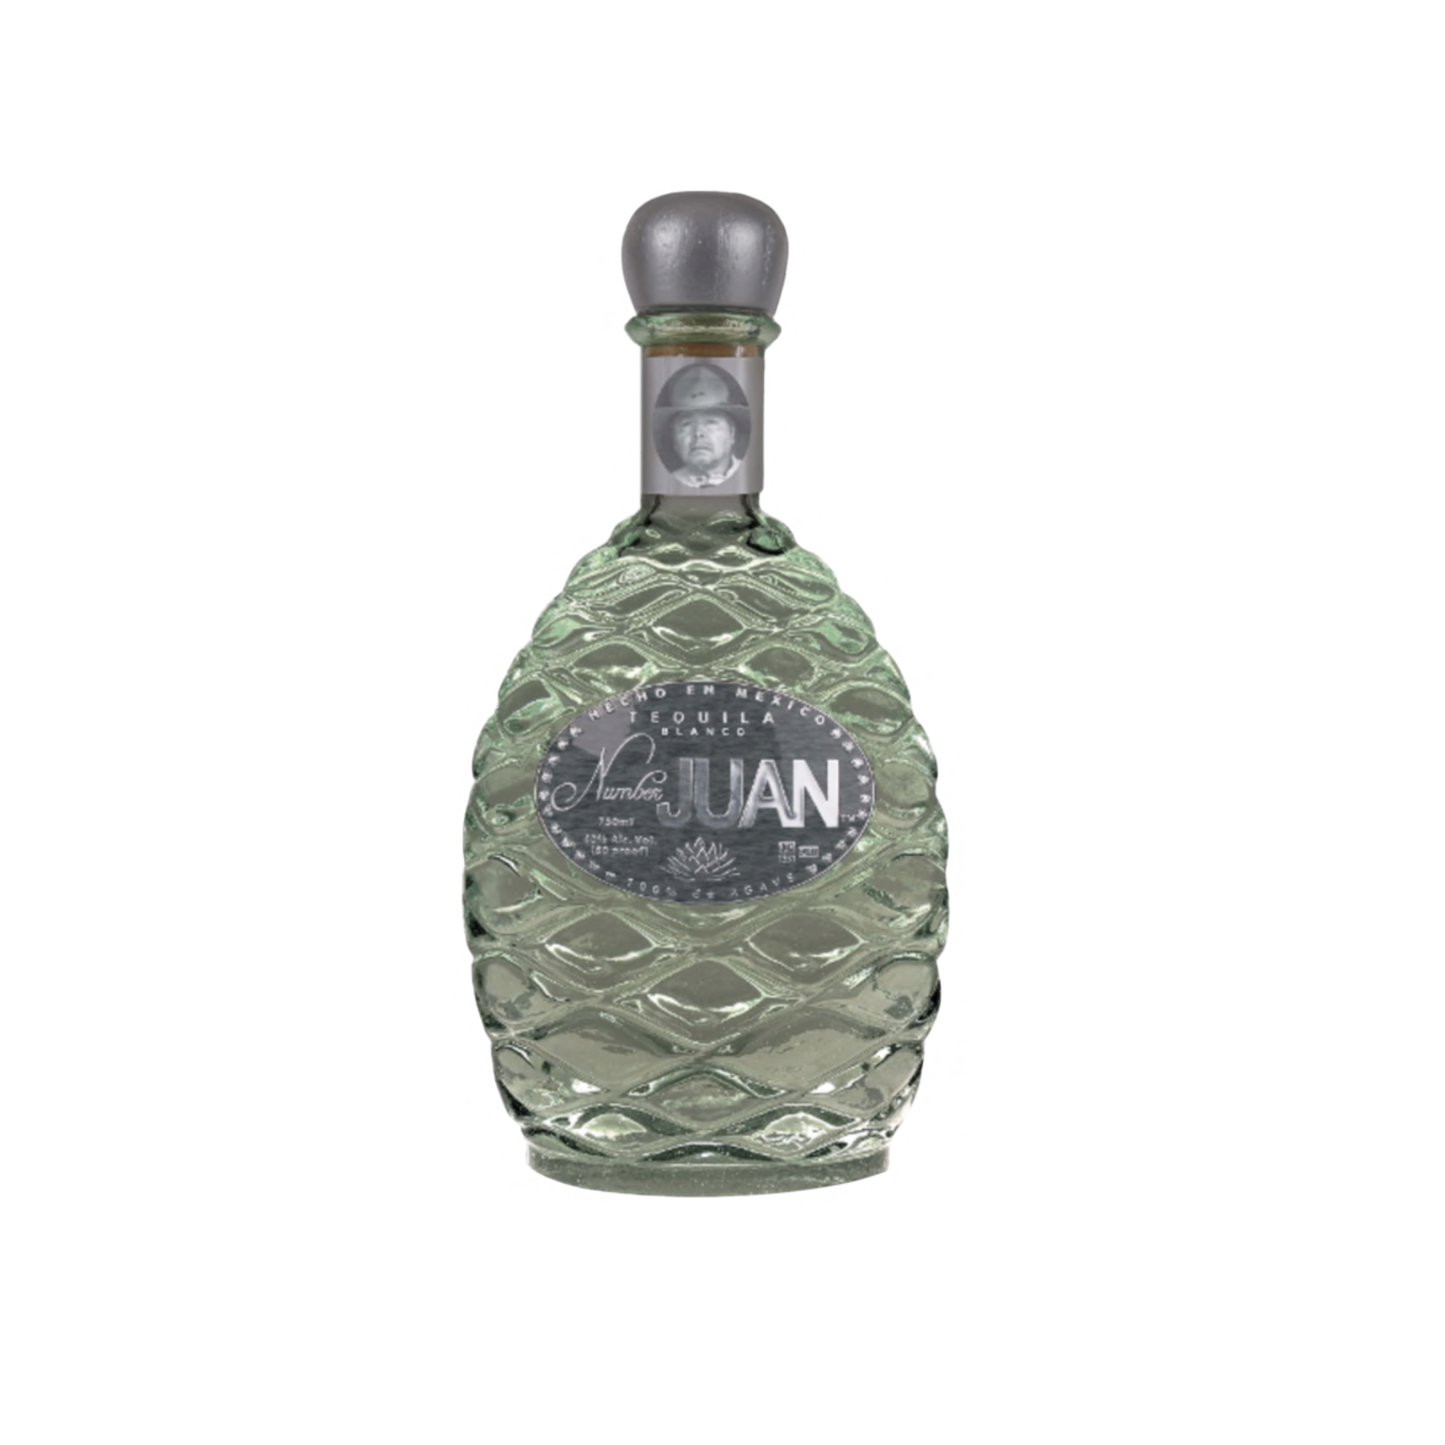 Number Juan Blanco Tequila - Liquor Geeks